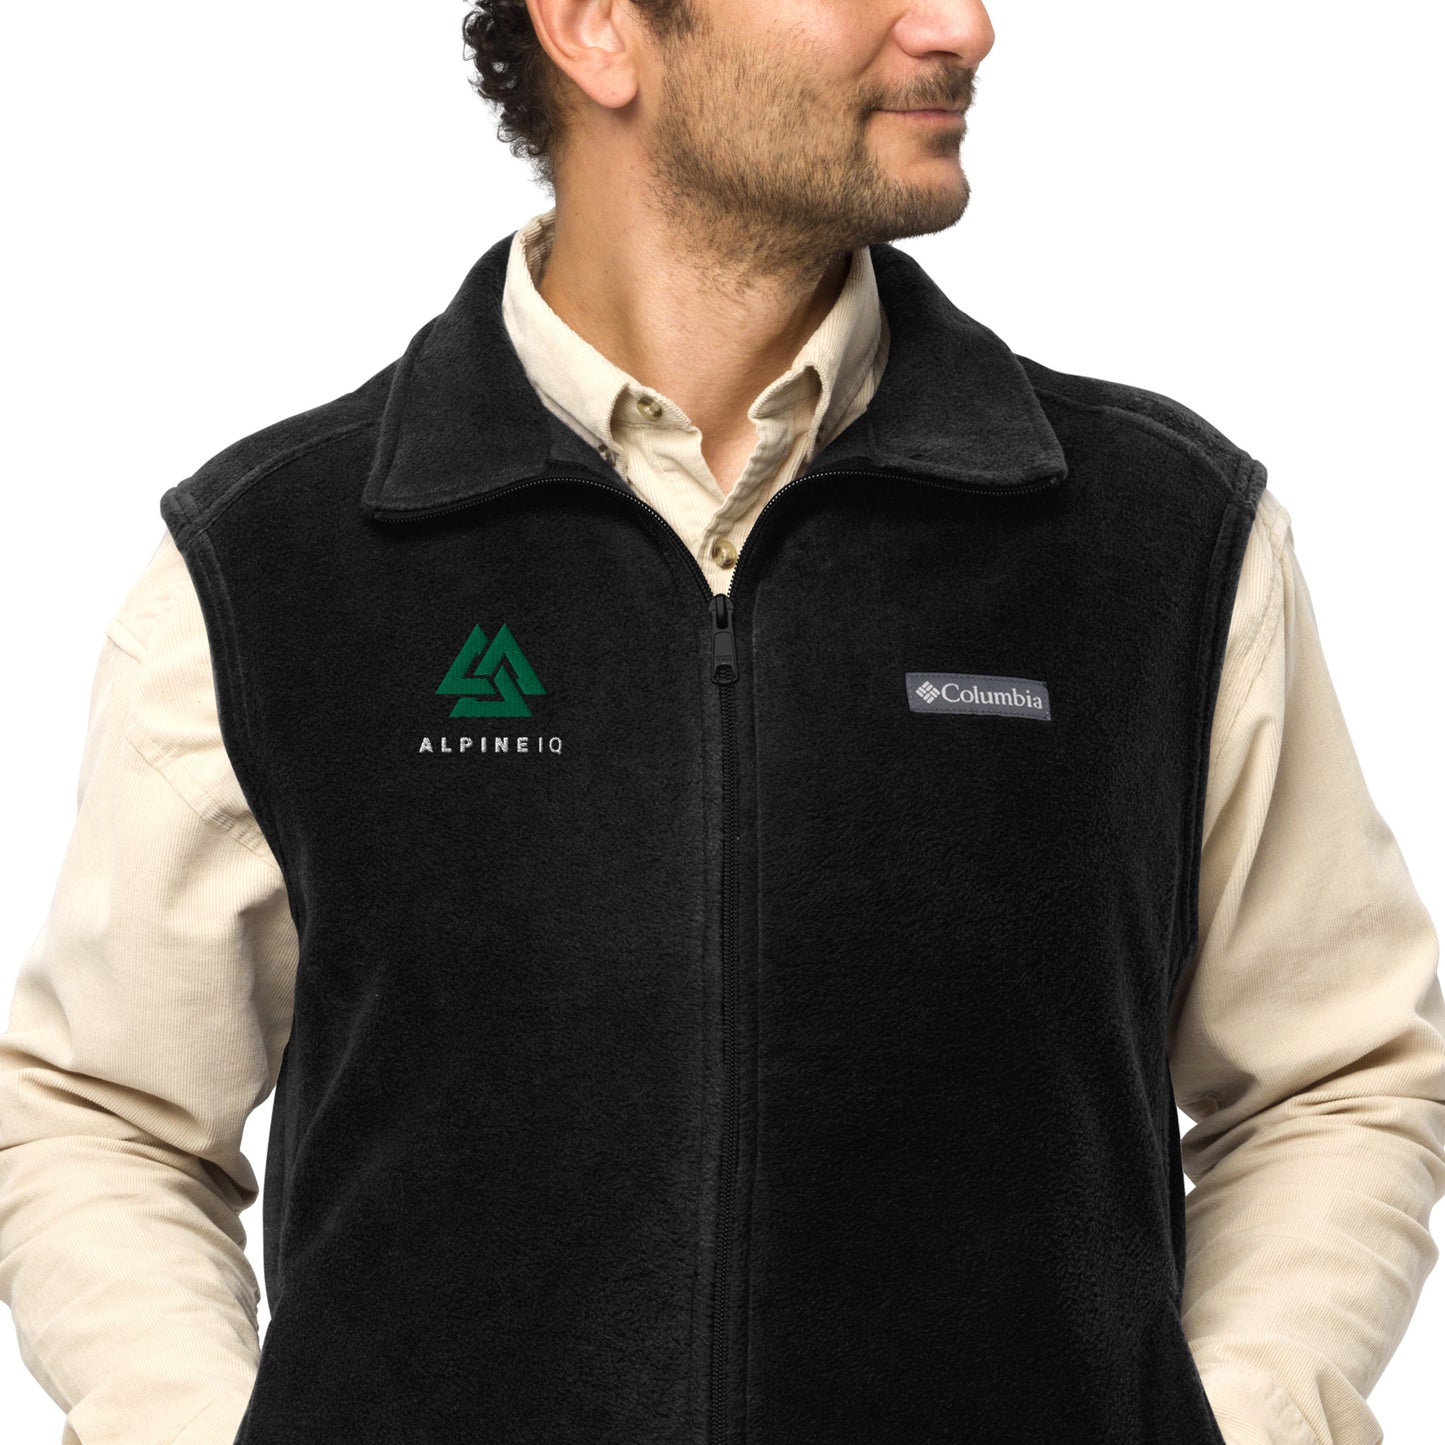 Alpine IQ Columbia fleece vest